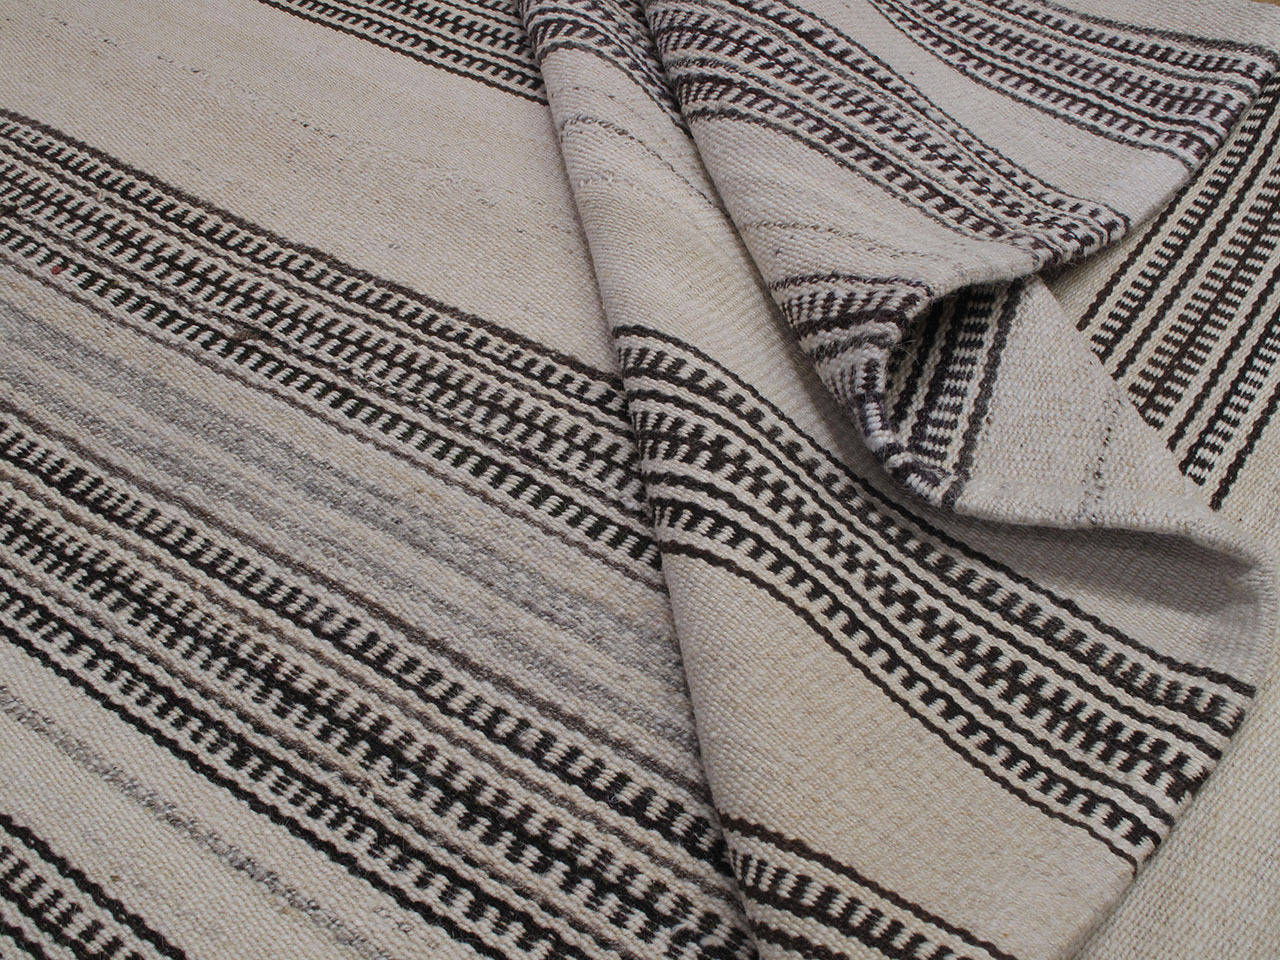 Striped Kilim in Natural Tones 3